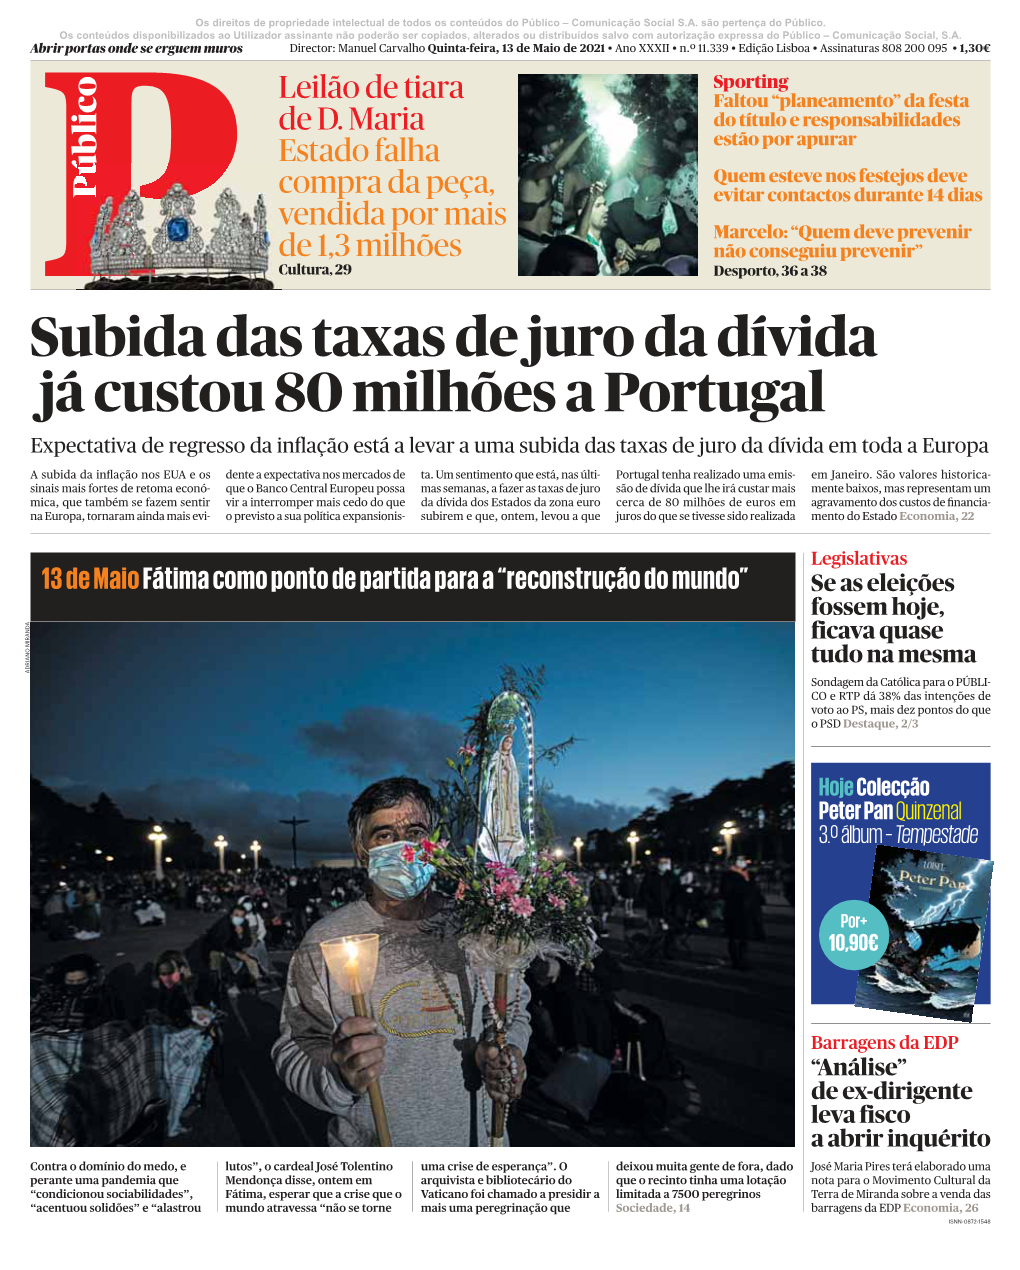 Subida Das Taxas De Juro Da Dívida Já Custou 80 Milhões a Portugal